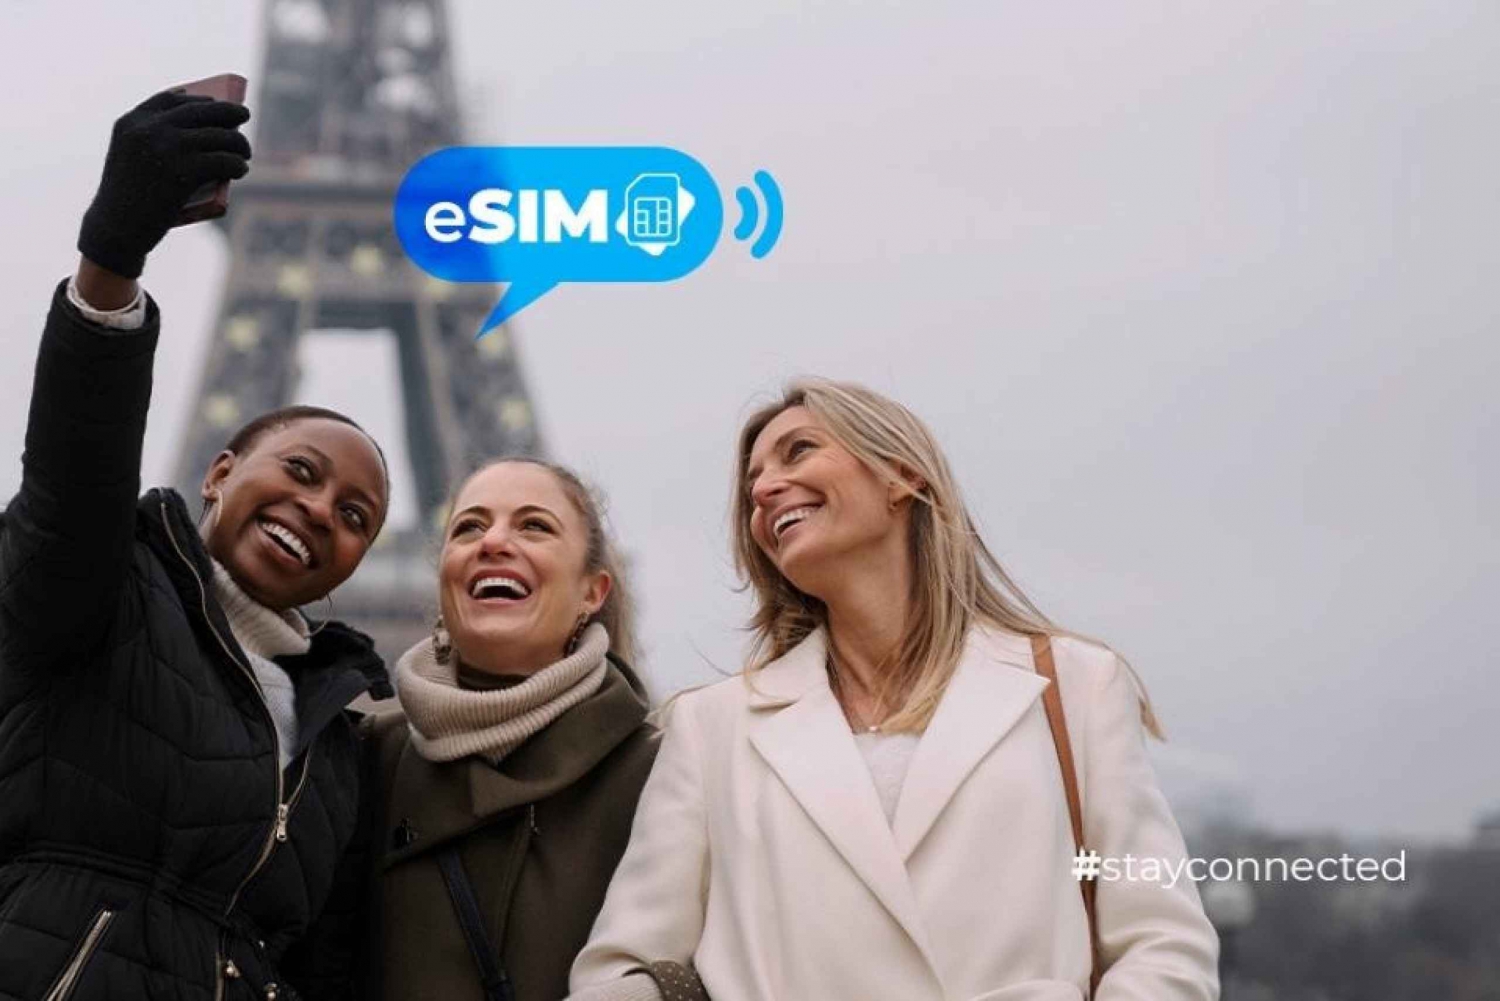 Nice & Frankrijk: Onbeperkt EU-internet met eSIM Mobiele Data